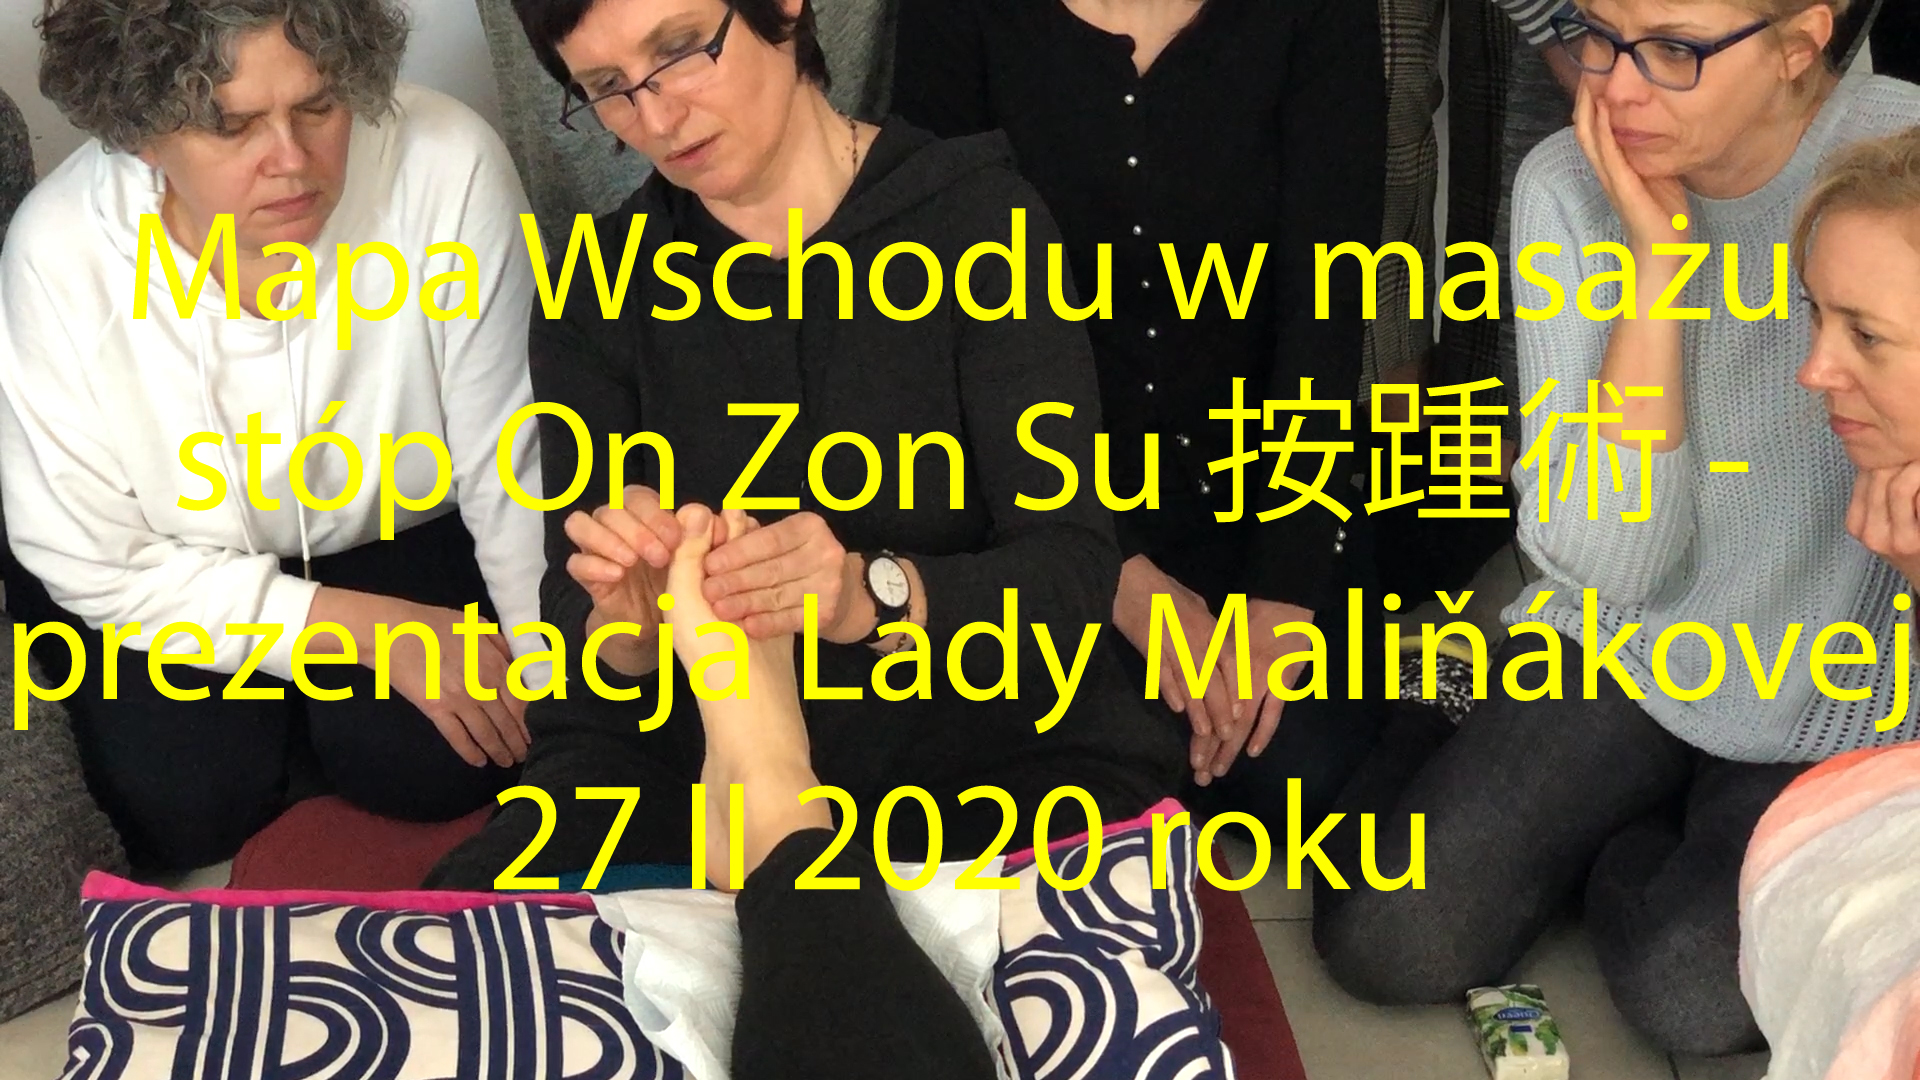 Kurs masażu stóp On Zon Su, Szkolenia refleksologii stóp - Mapa Wschodu w masażu stóp On Zon Su 按踵術 - prezentacja Lady Maliňákovej 27 II 2020 roku MEM_2.jpg